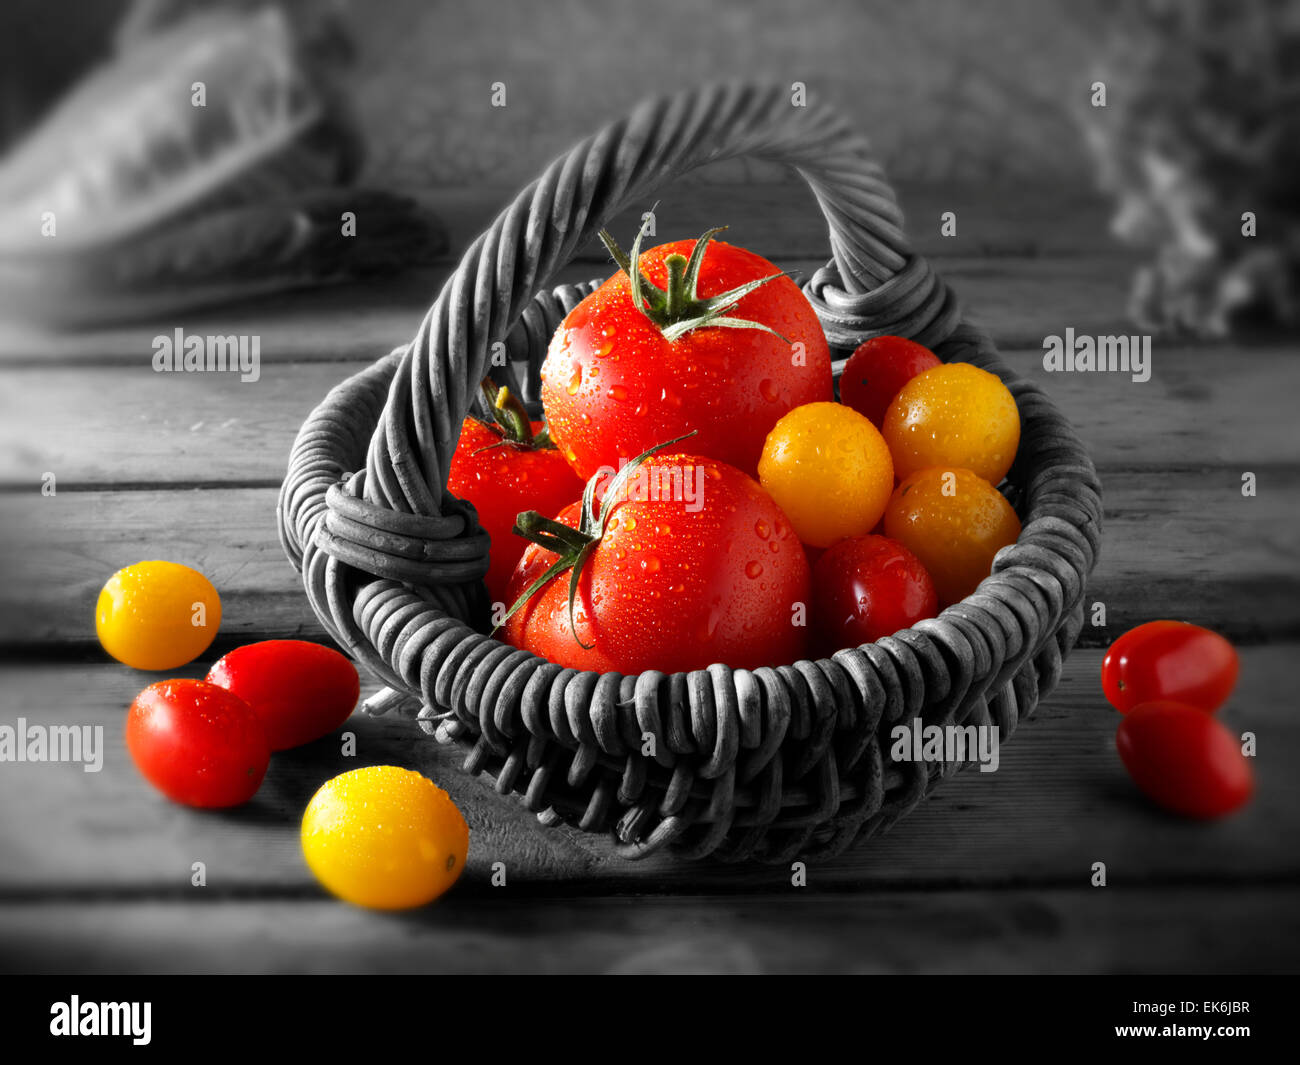 Mista fresca prelevata di colore giallo e rosso i pomodorini in un cestello Foto Stock